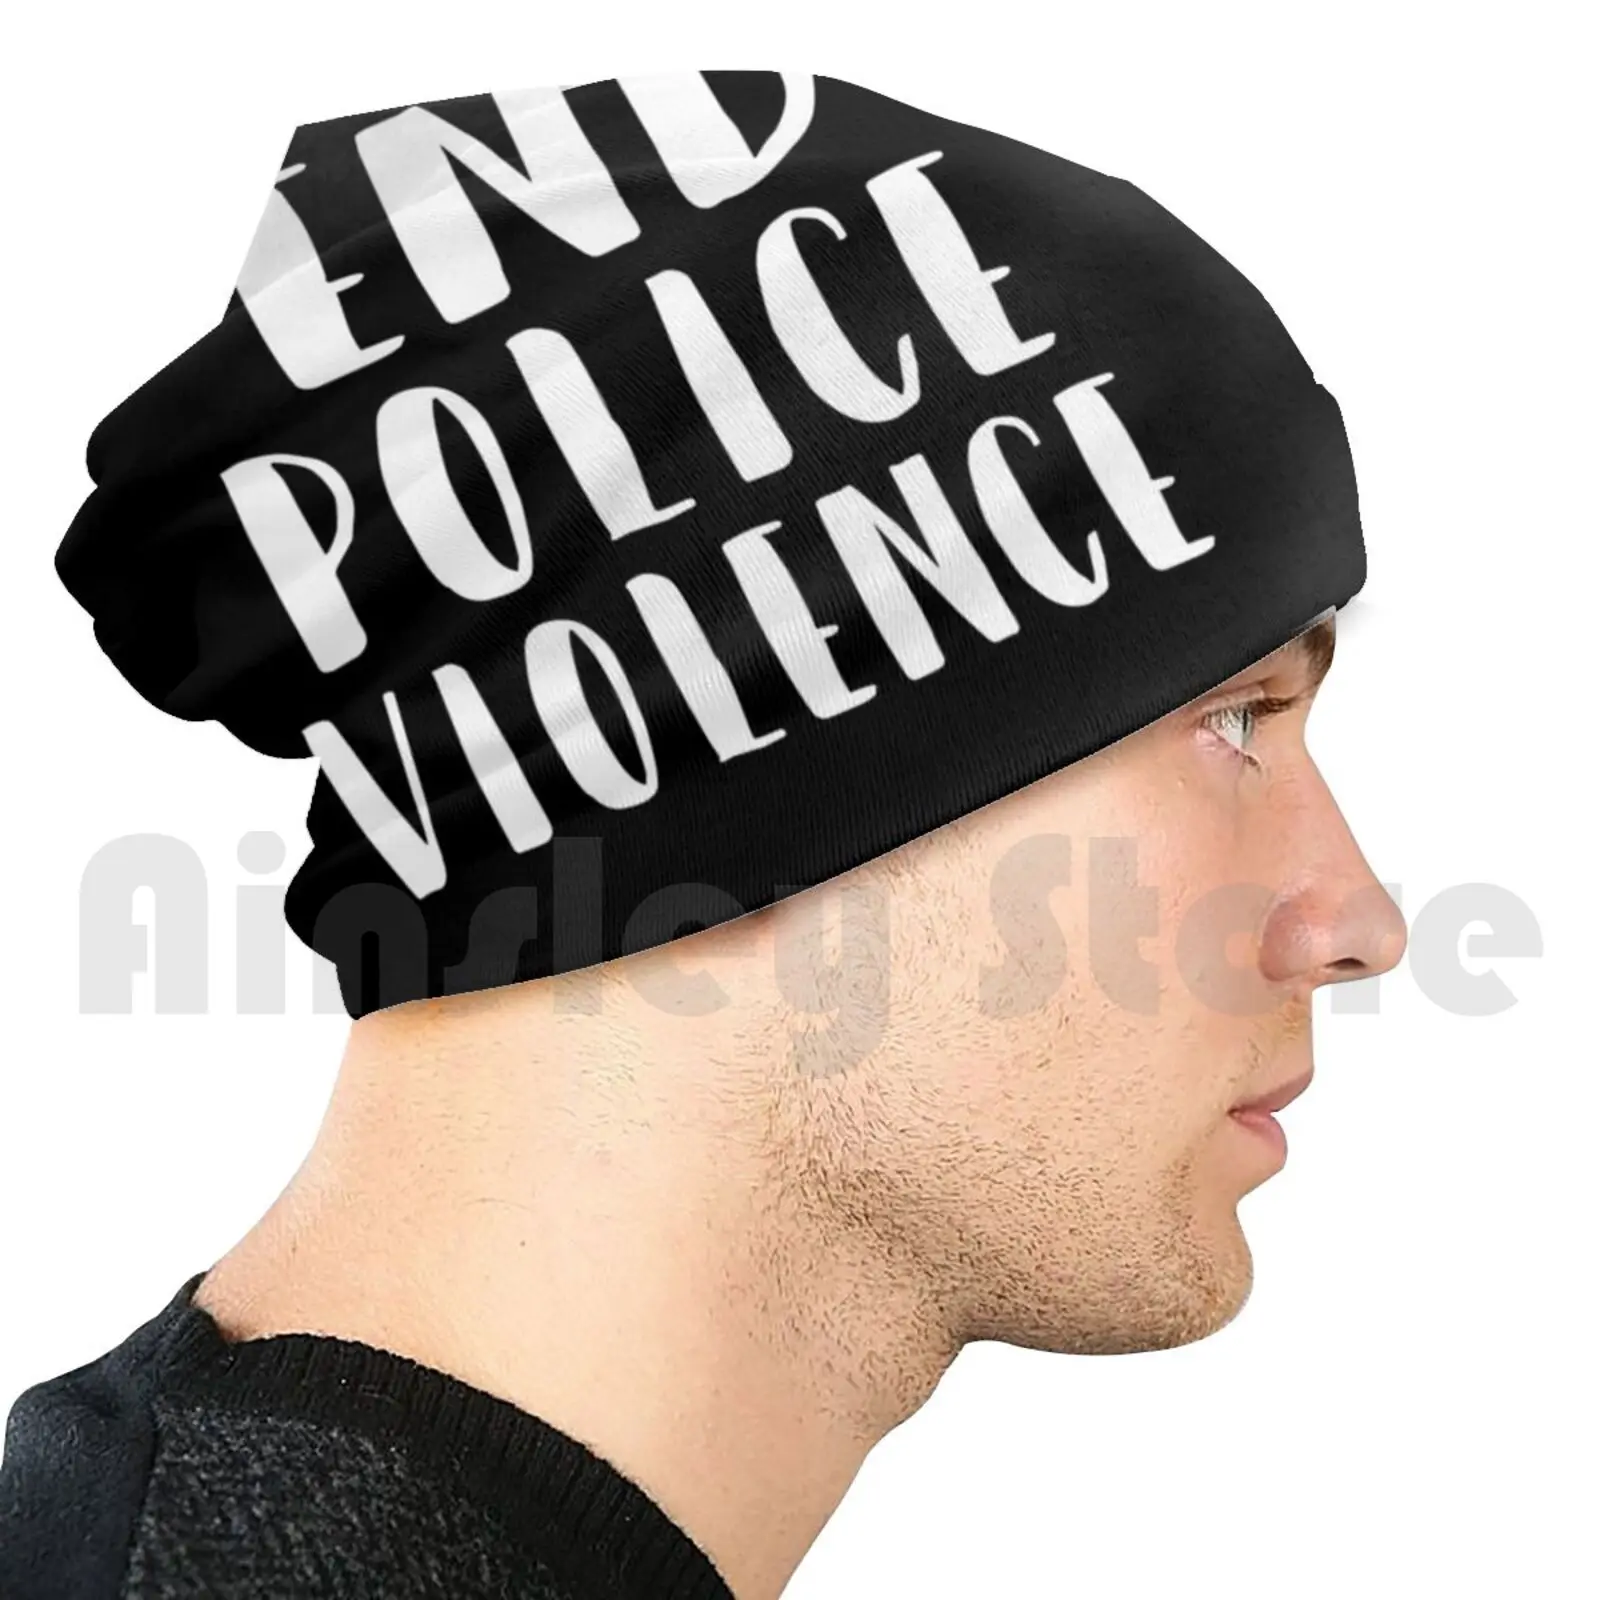 

Нательная шапка с надписью «End Police» на черном фоне